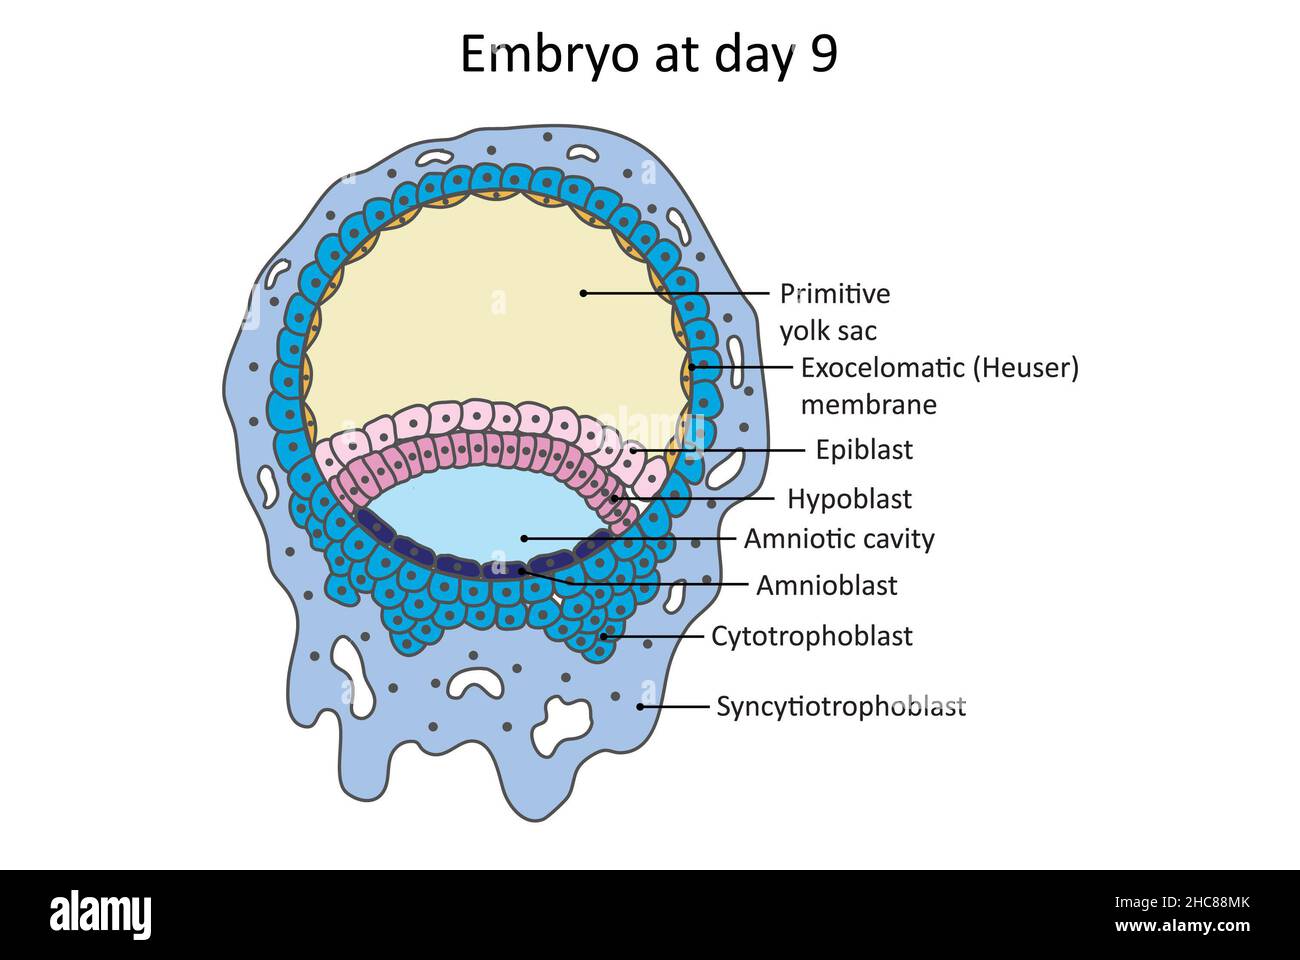 Embryon au jour 9 du développement embryotique, des amnioblastes et une membrane exocelomatique (Heuser) sont présents. Banque D'Images